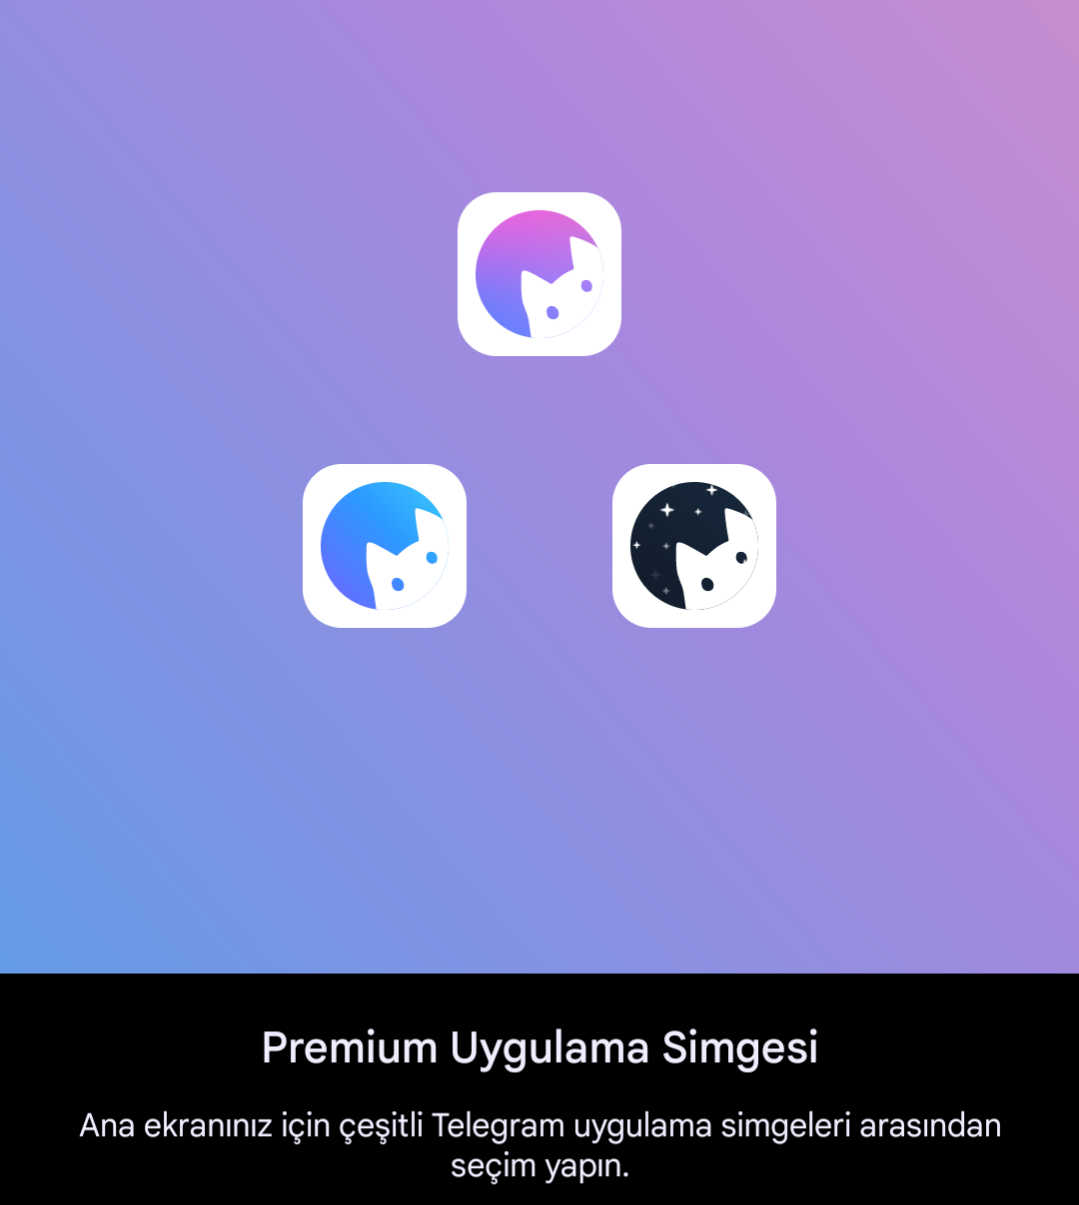 Telegram Premium, Premium Uygulama İkonları